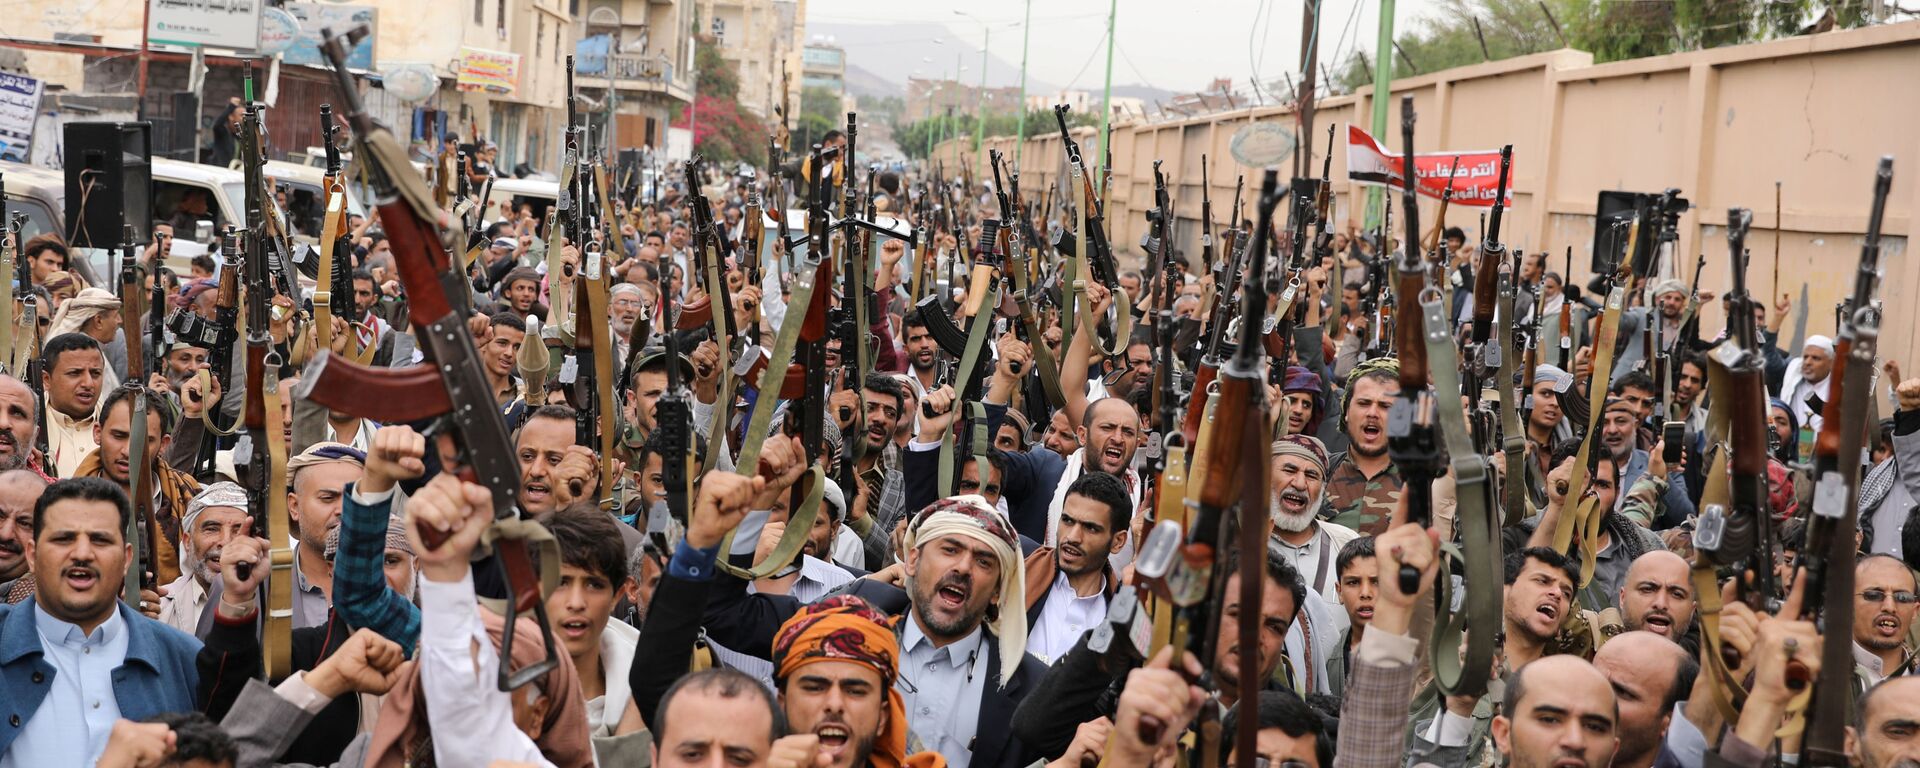 جماعة أنصار الله، الحوثيون، اليمن يو6 ليو 2020 - سبوتنيك عربي, 1920, 17.03.2022